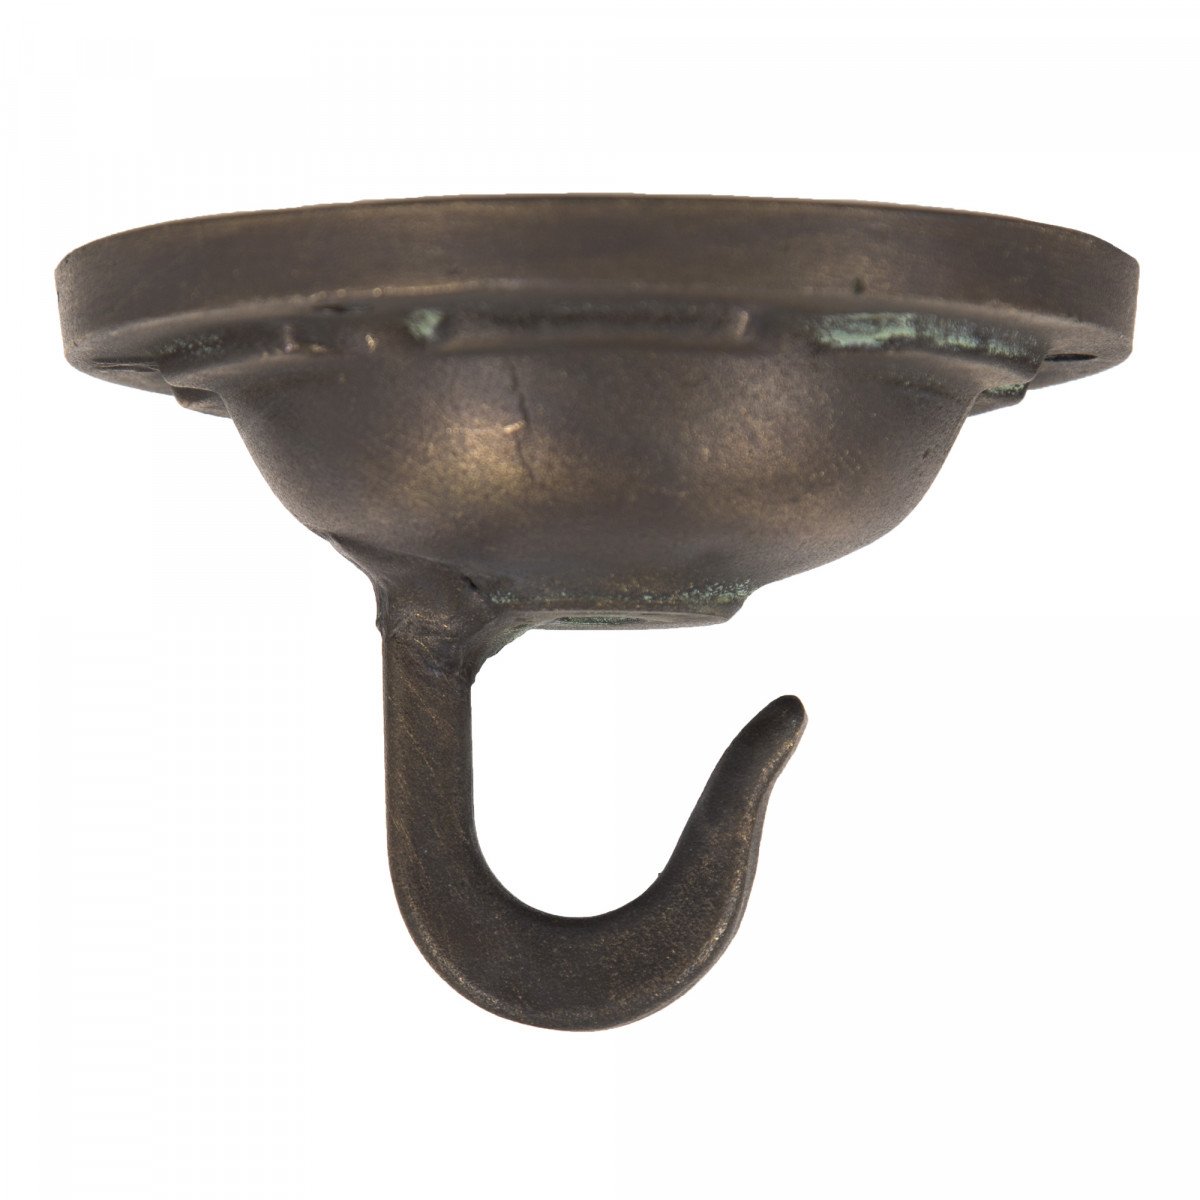 Ceiling mount hook bronze